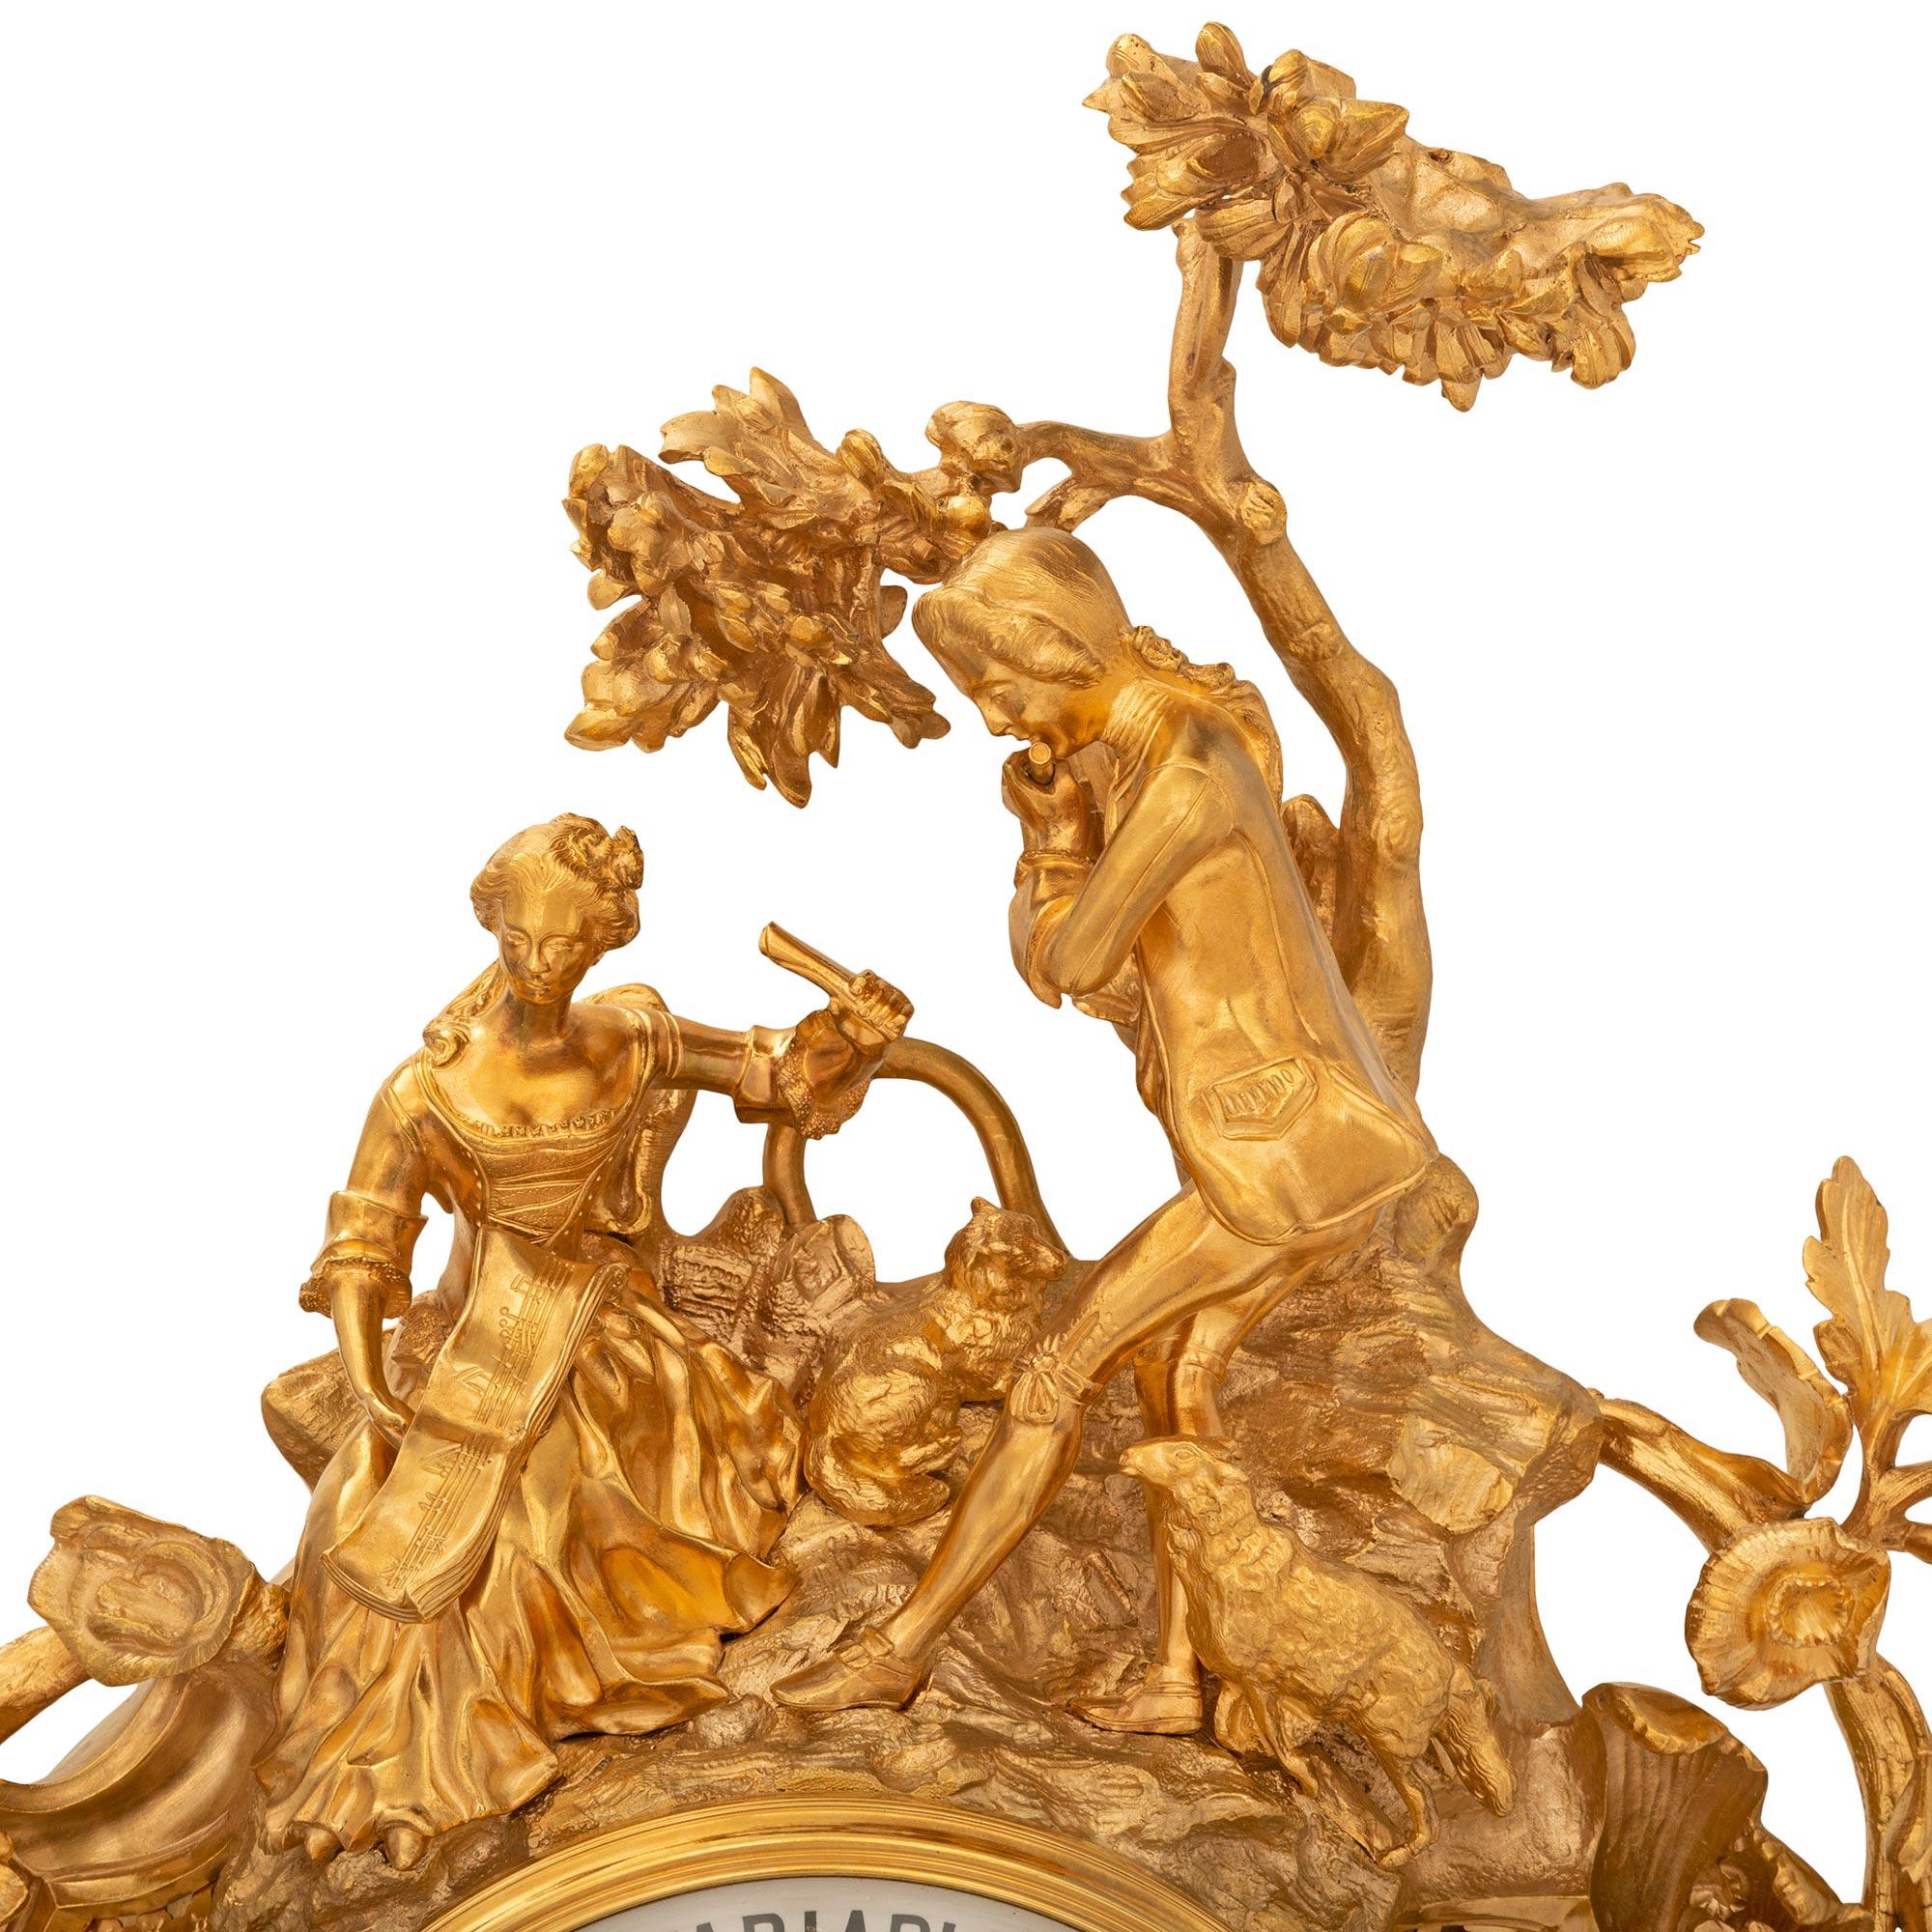 Une paire impressionnante et de grande taille d'horloge et de baromètre de cartel français du XVIIIe siècle d'époque Louis XV, signée Le Roy & Cie, Paris. Chaque boîtier en bronze doré présente une exquise symétrie avec des mouvements de rinceaux au